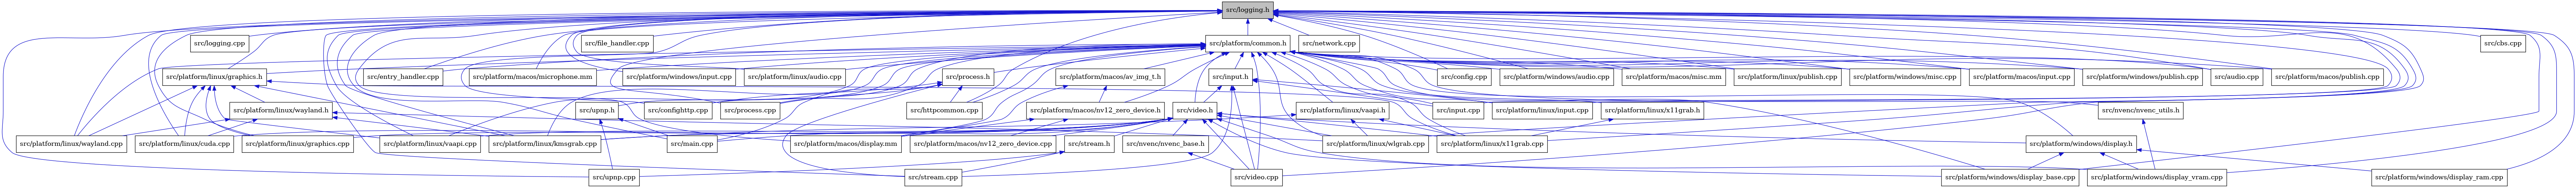 digraph {
    graph [bgcolor="#00000000"]
    node [shape=rectangle style=filled fillcolor="#FFFFFF" font=Helvetica padding=2]
    edge [color="#1414CE"]
    "42" [label="src/platform/macos/av_img_t.h" tooltip="src/platform/macos/av_img_t.h"]
    "16" [label="src/stream.cpp" tooltip="src/stream.cpp"]
    "36" [label="src/platform/linux/graphics.h" tooltip="src/platform/linux/graphics.h"]
    "23" [label="src/platform/linux/vaapi.cpp" tooltip="src/platform/linux/vaapi.cpp"]
    "18" [label="src/nvenc/nvenc_base.h" tooltip="src/nvenc/nvenc_base.h"]
    "22" [label="src/platform/linux/kmsgrab.cpp" tooltip="src/platform/linux/kmsgrab.cpp"]
    "28" [label="src/platform/windows/display.h" tooltip="src/platform/windows/display.h"]
    "9" [label="src/logging.cpp" tooltip="src/logging.cpp"]
    "6" [label="src/entry_handler.cpp" tooltip="src/entry_handler.cpp"]
    "44" [label="src/platform/macos/microphone.mm" tooltip="src/platform/macos/microphone.mm"]
    "49" [label="src/platform/windows/input.cpp" tooltip="src/platform/windows/input.cpp"]
    "34" [label="src/nvenc/nvenc_utils.h" tooltip="src/nvenc/nvenc_utils.h"]
    "33" [label="src/upnp.cpp" tooltip="src/upnp.cpp"]
    "17" [label="src/video.h" tooltip="src/video.h"]
    "10" [label="src/input.cpp" tooltip="src/input.cpp"]
    "35" [label="src/platform/linux/audio.cpp" tooltip="src/platform/linux/audio.cpp"]
    "15" [label="src/platform/linux/input.cpp" tooltip="src/platform/linux/input.cpp"]
    "31" [label="src/platform/windows/display_vram.cpp" tooltip="src/platform/windows/display_vram.cpp"]
    "25" [label="src/platform/linux/x11grab.cpp" tooltip="src/platform/linux/x11grab.cpp"]
    "13" [label="src/platform/common.h" tooltip="src/platform/common.h"]
    "40" [label="src/platform/linux/vaapi.h" tooltip="src/platform/linux/vaapi.h"]
    "7" [label="src/file_handler.cpp" tooltip="src/file_handler.cpp"]
    "3" [label="src/config.cpp" tooltip="src/config.cpp"]
    "14" [label="src/input.h" tooltip="src/input.h"]
    "30" [label="src/platform/windows/display_base.cpp" tooltip="src/platform/windows/display_base.cpp"]
    "38" [label="src/platform/linux/wayland.cpp" tooltip="src/platform/linux/wayland.cpp"]
    "53" [label="src/process.h" tooltip="src/process.h"]
    "29" [label="src/platform/windows/display_ram.cpp" tooltip="src/platform/windows/display_ram.cpp"]
    "1" [label="src/logging.h" tooltip="src/logging.h" fillcolor="#BFBFBF"]
    "11" [label="src/network.cpp" tooltip="src/network.cpp"]
    "48" [label="src/platform/windows/audio.cpp" tooltip="src/platform/windows/audio.cpp"]
    "52" [label="src/process.cpp" tooltip="src/process.cpp"]
    "21" [label="src/platform/linux/cuda.cpp" tooltip="src/platform/linux/cuda.cpp"]
    "12" [label="src/main.cpp" tooltip="src/main.cpp"]
    "54" [label="src/upnp.h" tooltip="src/upnp.h"]
    "43" [label="src/platform/macos/nv12_zero_device.h" tooltip="src/platform/macos/nv12_zero_device.h"]
    "46" [label="src/platform/macos/misc.mm" tooltip="src/platform/macos/misc.mm"]
    "39" [label="src/platform/linux/publish.cpp" tooltip="src/platform/linux/publish.cpp"]
    "50" [label="src/platform/windows/misc.cpp" tooltip="src/platform/windows/misc.cpp"]
    "32" [label="src/stream.h" tooltip="src/stream.h"]
    "45" [label="src/platform/macos/input.cpp" tooltip="src/platform/macos/input.cpp"]
    "4" [label="src/confighttp.cpp" tooltip="src/confighttp.cpp"]
    "51" [label="src/platform/windows/publish.cpp" tooltip="src/platform/windows/publish.cpp"]
    "2" [label="src/audio.cpp" tooltip="src/audio.cpp"]
    "19" [label="src/video.cpp" tooltip="src/video.cpp"]
    "27" [label="src/platform/macos/nv12_zero_device.cpp" tooltip="src/platform/macos/nv12_zero_device.cpp"]
    "20" [label="src/platform/linux/graphics.cpp" tooltip="src/platform/linux/graphics.cpp"]
    "47" [label="src/platform/macos/publish.cpp" tooltip="src/platform/macos/publish.cpp"]
    "5" [label="src/cbs.cpp" tooltip="src/cbs.cpp"]
    "8" [label="src/httpcommon.cpp" tooltip="src/httpcommon.cpp"]
    "24" [label="src/platform/linux/wlgrab.cpp" tooltip="src/platform/linux/wlgrab.cpp"]
    "26" [label="src/platform/macos/display.mm" tooltip="src/platform/macos/display.mm"]
    "41" [label="src/platform/linux/x11grab.h" tooltip="src/platform/linux/x11grab.h"]
    "37" [label="src/platform/linux/wayland.h" tooltip="src/platform/linux/wayland.h"]
    "42" -> "26" [dir=back tooltip="include"]
    "42" -> "43" [dir=back tooltip="include"]
    "36" -> "20" [dir=back tooltip="include"]
    "36" -> "21" [dir=back tooltip="include"]
    "36" -> "22" [dir=back tooltip="include"]
    "36" -> "23" [dir=back tooltip="include"]
    "36" -> "37" [dir=back tooltip="include"]
    "36" -> "38" [dir=back tooltip="include"]
    "36" -> "25" [dir=back tooltip="include"]
    "18" -> "19" [dir=back tooltip="include"]
    "28" -> "29" [dir=back tooltip="include"]
    "28" -> "30" [dir=back tooltip="include"]
    "28" -> "31" [dir=back tooltip="include"]
    "34" -> "31" [dir=back tooltip="include"]
    "17" -> "12" [dir=back tooltip="include"]
    "17" -> "18" [dir=back tooltip="include"]
    "17" -> "20" [dir=back tooltip="include"]
    "17" -> "21" [dir=back tooltip="include"]
    "17" -> "22" [dir=back tooltip="include"]
    "17" -> "23" [dir=back tooltip="include"]
    "17" -> "24" [dir=back tooltip="include"]
    "17" -> "25" [dir=back tooltip="include"]
    "17" -> "26" [dir=back tooltip="include"]
    "17" -> "27" [dir=back tooltip="include"]
    "17" -> "28" [dir=back tooltip="include"]
    "17" -> "30" [dir=back tooltip="include"]
    "17" -> "31" [dir=back tooltip="include"]
    "17" -> "32" [dir=back tooltip="include"]
    "17" -> "19" [dir=back tooltip="include"]
    "13" -> "2" [dir=back tooltip="include"]
    "13" -> "3" [dir=back tooltip="include"]
    "13" -> "4" [dir=back tooltip="include"]
    "13" -> "6" [dir=back tooltip="include"]
    "13" -> "8" [dir=back tooltip="include"]
    "13" -> "14" [dir=back tooltip="include"]
    "13" -> "10" [dir=back tooltip="include"]
    "13" -> "34" [dir=back tooltip="include"]
    "13" -> "35" [dir=back tooltip="include"]
    "13" -> "36" [dir=back tooltip="include"]
    "13" -> "22" [dir=back tooltip="include"]
    "13" -> "15" [dir=back tooltip="include"]
    "13" -> "39" [dir=back tooltip="include"]
    "13" -> "23" [dir=back tooltip="include"]
    "13" -> "40" [dir=back tooltip="include"]
    "13" -> "38" [dir=back tooltip="include"]
    "13" -> "24" [dir=back tooltip="include"]
    "13" -> "41" [dir=back tooltip="include"]
    "13" -> "42" [dir=back tooltip="include"]
    "13" -> "25" [dir=back tooltip="include"]
    "13" -> "26" [dir=back tooltip="include"]
    "13" -> "44" [dir=back tooltip="include"]
    "13" -> "45" [dir=back tooltip="include"]
    "13" -> "46" [dir=back tooltip="include"]
    "13" -> "43" [dir=back tooltip="include"]
    "13" -> "47" [dir=back tooltip="include"]
    "13" -> "48" [dir=back tooltip="include"]
    "13" -> "28" [dir=back tooltip="include"]
    "13" -> "30" [dir=back tooltip="include"]
    "13" -> "49" [dir=back tooltip="include"]
    "13" -> "50" [dir=back tooltip="include"]
    "13" -> "51" [dir=back tooltip="include"]
    "13" -> "52" [dir=back tooltip="include"]
    "13" -> "53" [dir=back tooltip="include"]
    "13" -> "54" [dir=back tooltip="include"]
    "13" -> "17" [dir=back tooltip="include"]
    "13" -> "19" [dir=back tooltip="include"]
    "40" -> "22" [dir=back tooltip="include"]
    "40" -> "24" [dir=back tooltip="include"]
    "40" -> "25" [dir=back tooltip="include"]
    "14" -> "10" [dir=back tooltip="include"]
    "14" -> "15" [dir=back tooltip="include"]
    "14" -> "16" [dir=back tooltip="include"]
    "14" -> "17" [dir=back tooltip="include"]
    "14" -> "19" [dir=back tooltip="include"]
    "53" -> "4" [dir=back tooltip="include"]
    "53" -> "8" [dir=back tooltip="include"]
    "53" -> "12" [dir=back tooltip="include"]
    "53" -> "52" [dir=back tooltip="include"]
    "53" -> "16" [dir=back tooltip="include"]
    "1" -> "2" [dir=back tooltip="include"]
    "1" -> "3" [dir=back tooltip="include"]
    "1" -> "4" [dir=back tooltip="include"]
    "1" -> "5" [dir=back tooltip="include"]
    "1" -> "6" [dir=back tooltip="include"]
    "1" -> "7" [dir=back tooltip="include"]
    "1" -> "8" [dir=back tooltip="include"]
    "1" -> "9" [dir=back tooltip="include"]
    "1" -> "10" [dir=back tooltip="include"]
    "1" -> "11" [dir=back tooltip="include"]
    "1" -> "12" [dir=back tooltip="include"]
    "1" -> "13" [dir=back tooltip="include"]
    "1" -> "35" [dir=back tooltip="include"]
    "1" -> "20" [dir=back tooltip="include"]
    "1" -> "36" [dir=back tooltip="include"]
    "1" -> "21" [dir=back tooltip="include"]
    "1" -> "22" [dir=back tooltip="include"]
    "1" -> "15" [dir=back tooltip="include"]
    "1" -> "39" [dir=back tooltip="include"]
    "1" -> "23" [dir=back tooltip="include"]
    "1" -> "38" [dir=back tooltip="include"]
    "1" -> "24" [dir=back tooltip="include"]
    "1" -> "25" [dir=back tooltip="include"]
    "1" -> "26" [dir=back tooltip="include"]
    "1" -> "44" [dir=back tooltip="include"]
    "1" -> "45" [dir=back tooltip="include"]
    "1" -> "46" [dir=back tooltip="include"]
    "1" -> "47" [dir=back tooltip="include"]
    "1" -> "48" [dir=back tooltip="include"]
    "1" -> "29" [dir=back tooltip="include"]
    "1" -> "30" [dir=back tooltip="include"]
    "1" -> "49" [dir=back tooltip="include"]
    "1" -> "31" [dir=back tooltip="include"]
    "1" -> "50" [dir=back tooltip="include"]
    "1" -> "51" [dir=back tooltip="include"]
    "1" -> "52" [dir=back tooltip="include"]
    "1" -> "16" [dir=back tooltip="include"]
    "1" -> "33" [dir=back tooltip="include"]
    "1" -> "19" [dir=back tooltip="include"]
    "54" -> "12" [dir=back tooltip="include"]
    "54" -> "33" [dir=back tooltip="include"]
    "43" -> "26" [dir=back tooltip="include"]
    "43" -> "27" [dir=back tooltip="include"]
    "32" -> "16" [dir=back tooltip="include"]
    "32" -> "33" [dir=back tooltip="include"]
    "41" -> "25" [dir=back tooltip="include"]
    "37" -> "21" [dir=back tooltip="include"]
    "37" -> "22" [dir=back tooltip="include"]
    "37" -> "38" [dir=back tooltip="include"]
    "37" -> "24" [dir=back tooltip="include"]
}